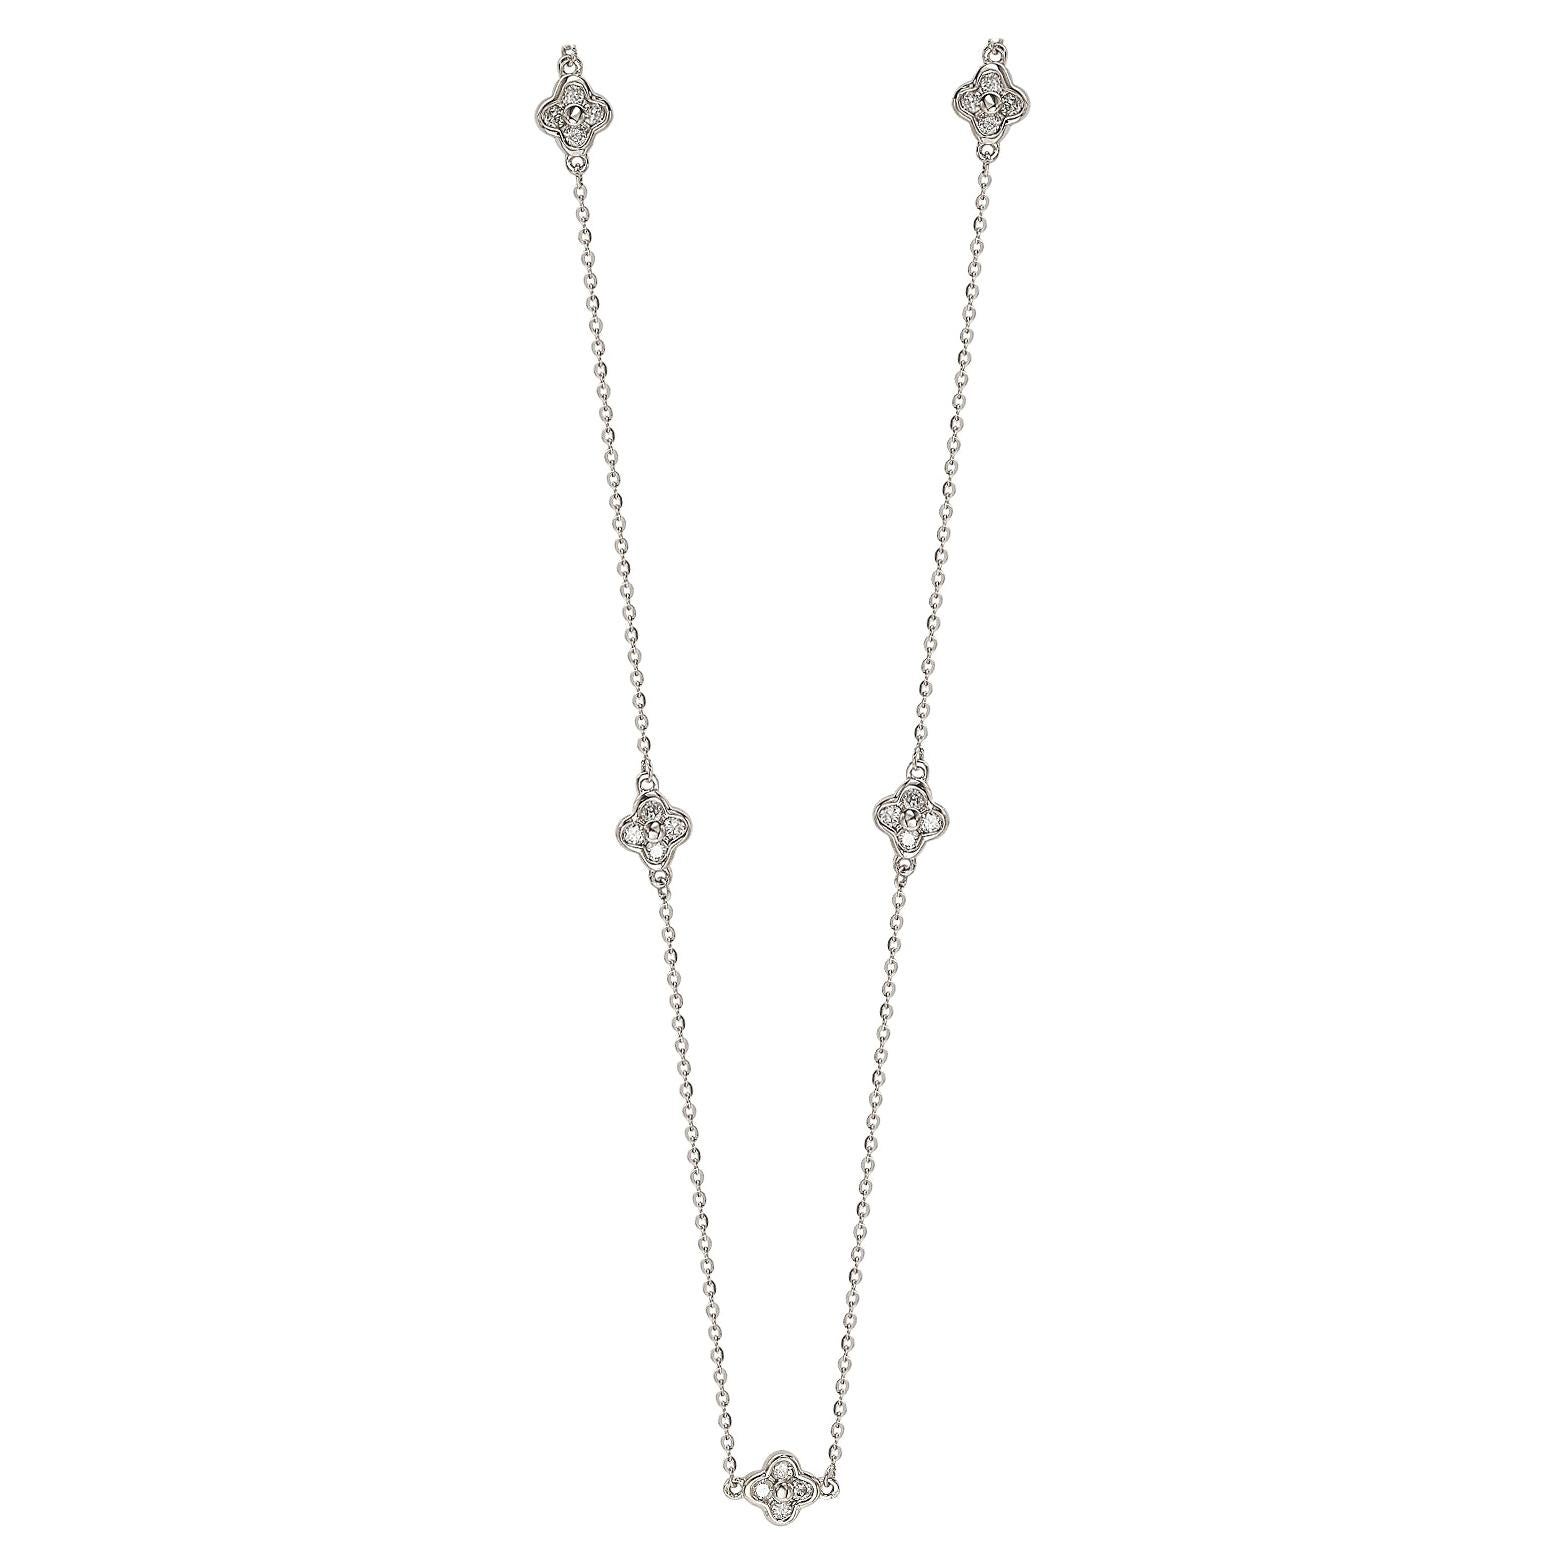 Suzy Levian, Station-Halskette, 14 Karat Weißgold, weißer Diamant, 5 Kleeblätter pro Meter